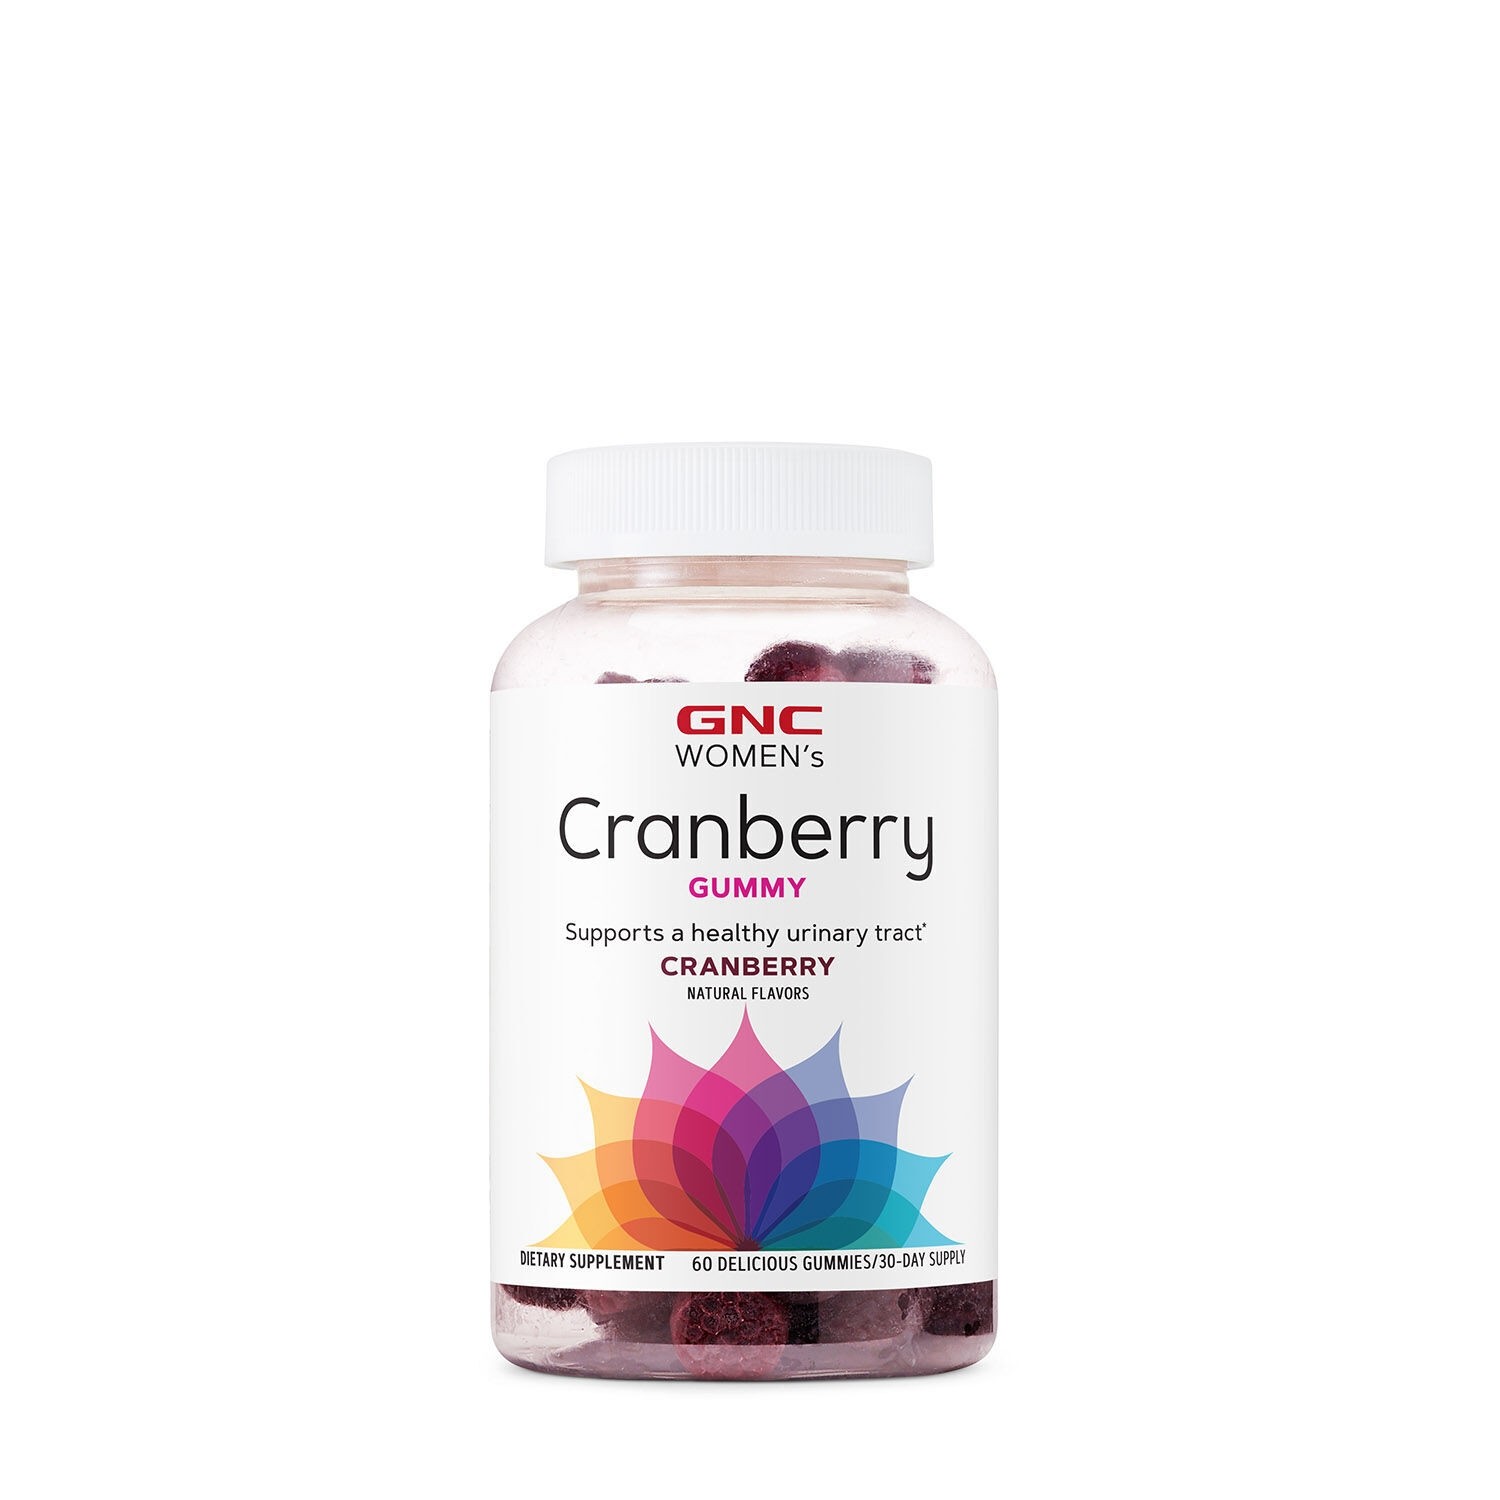 Jeleuri fara gluten cu extract din merisor cu aroma naturala Women’s Cranberry Gummies, 60 jeleuri, GNC